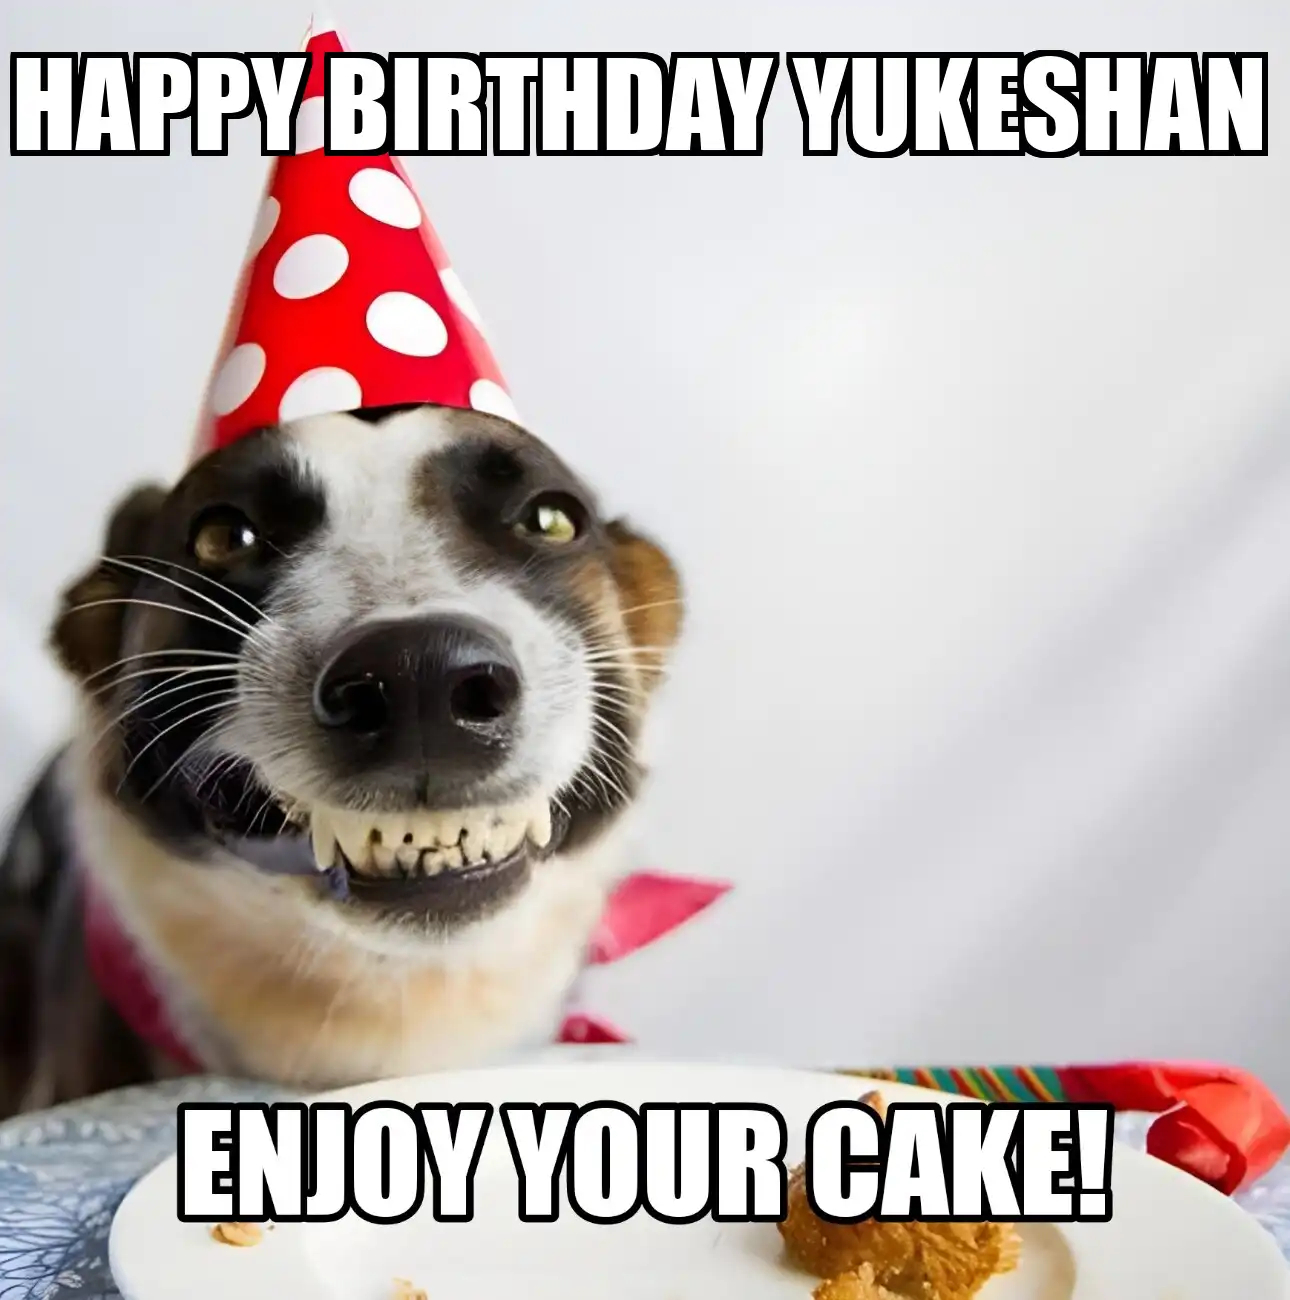 Happy Birthday Yukeshan Enjoy Your Cake Dog Meme